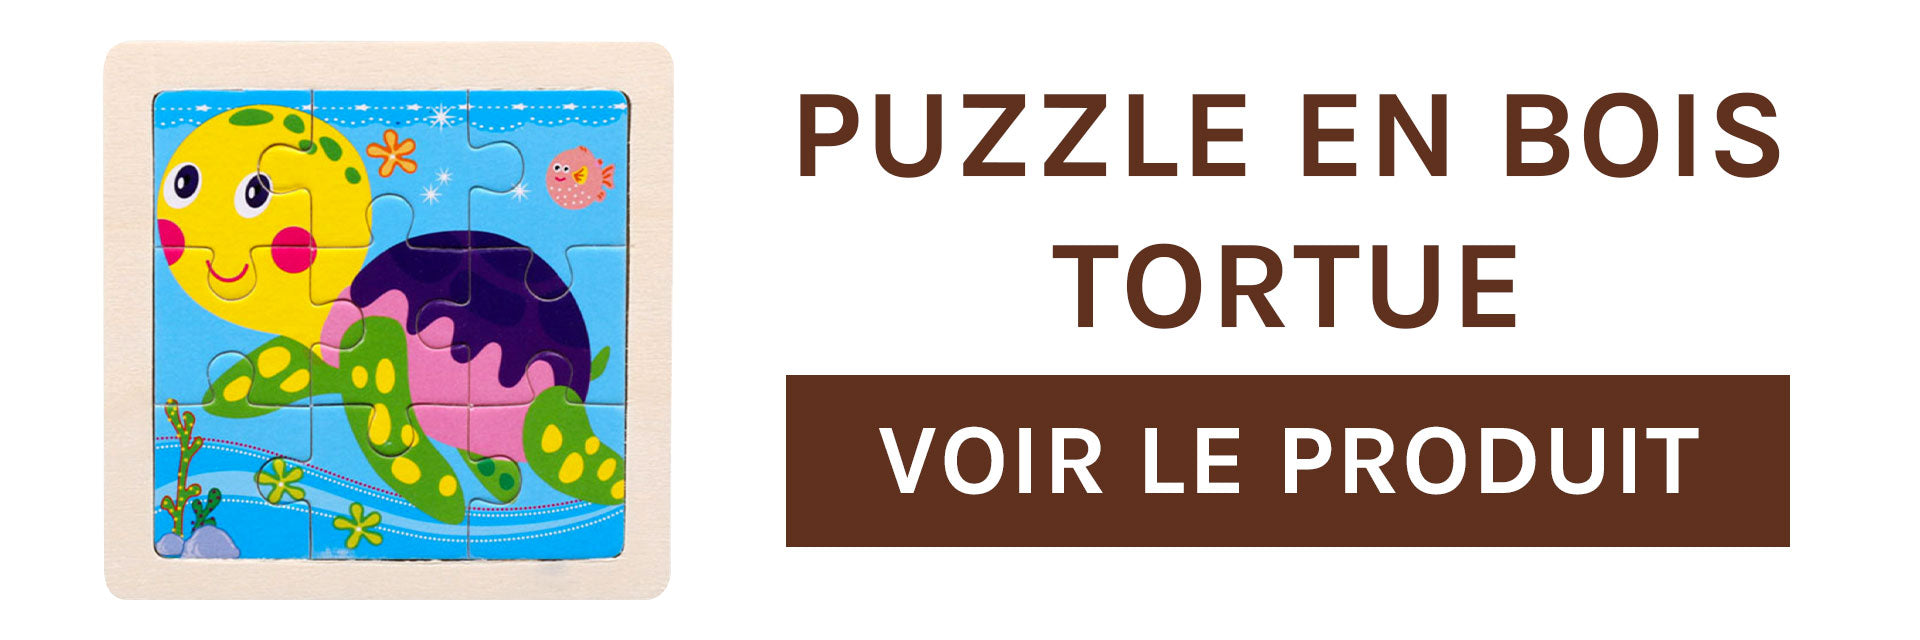 puzzle-en-bois-tortue